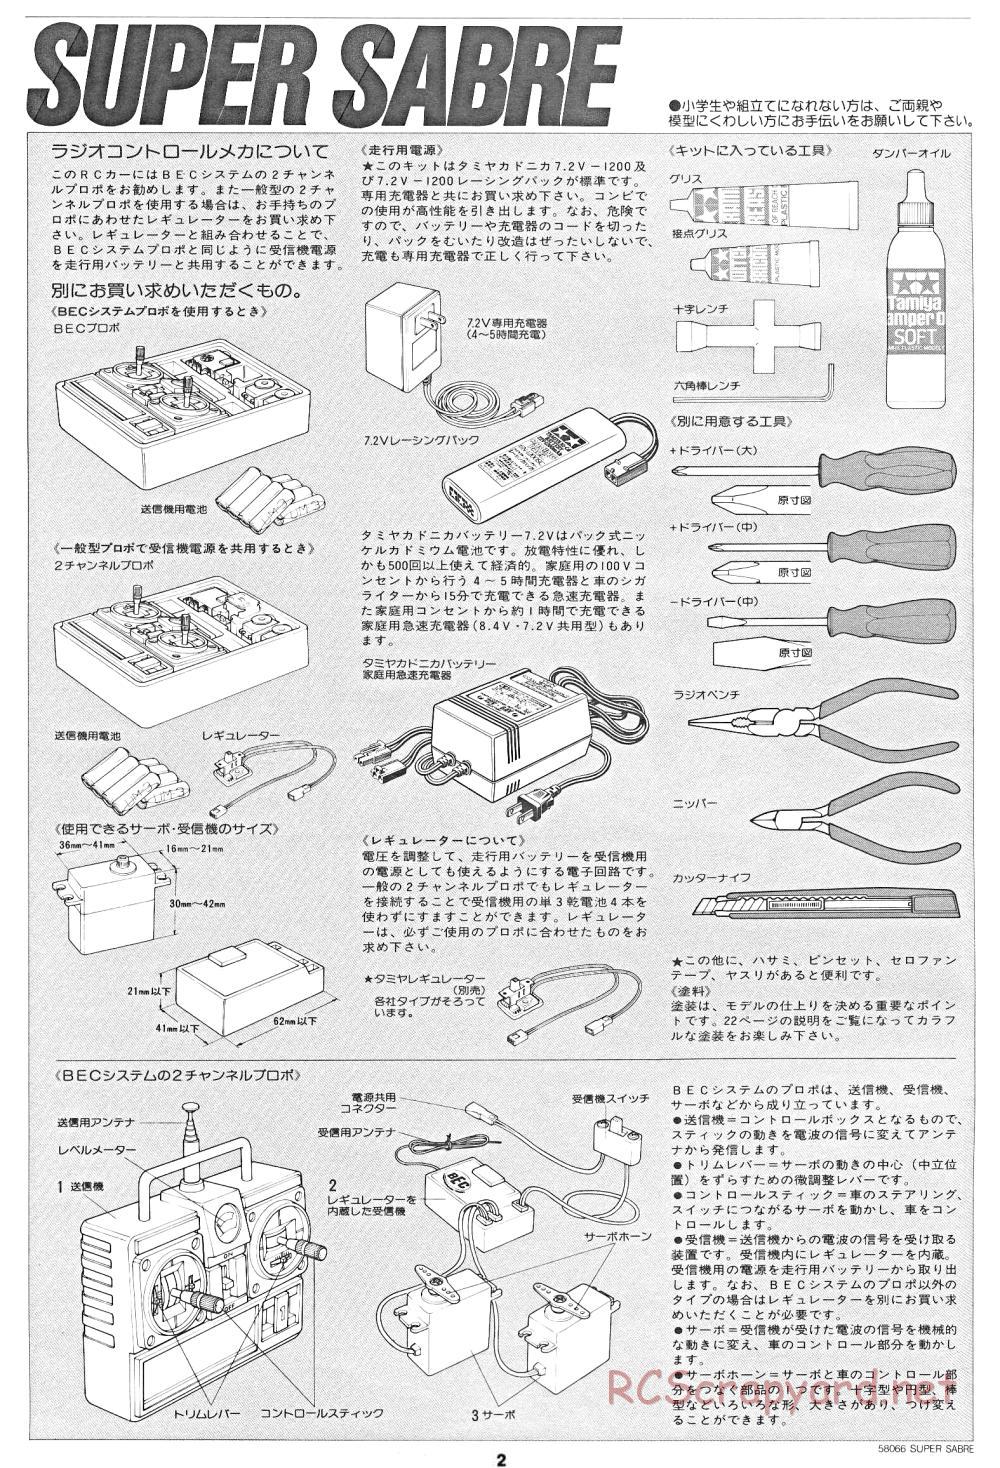 Tamiya - Super Sabre - 58066 - Manual - Page 2